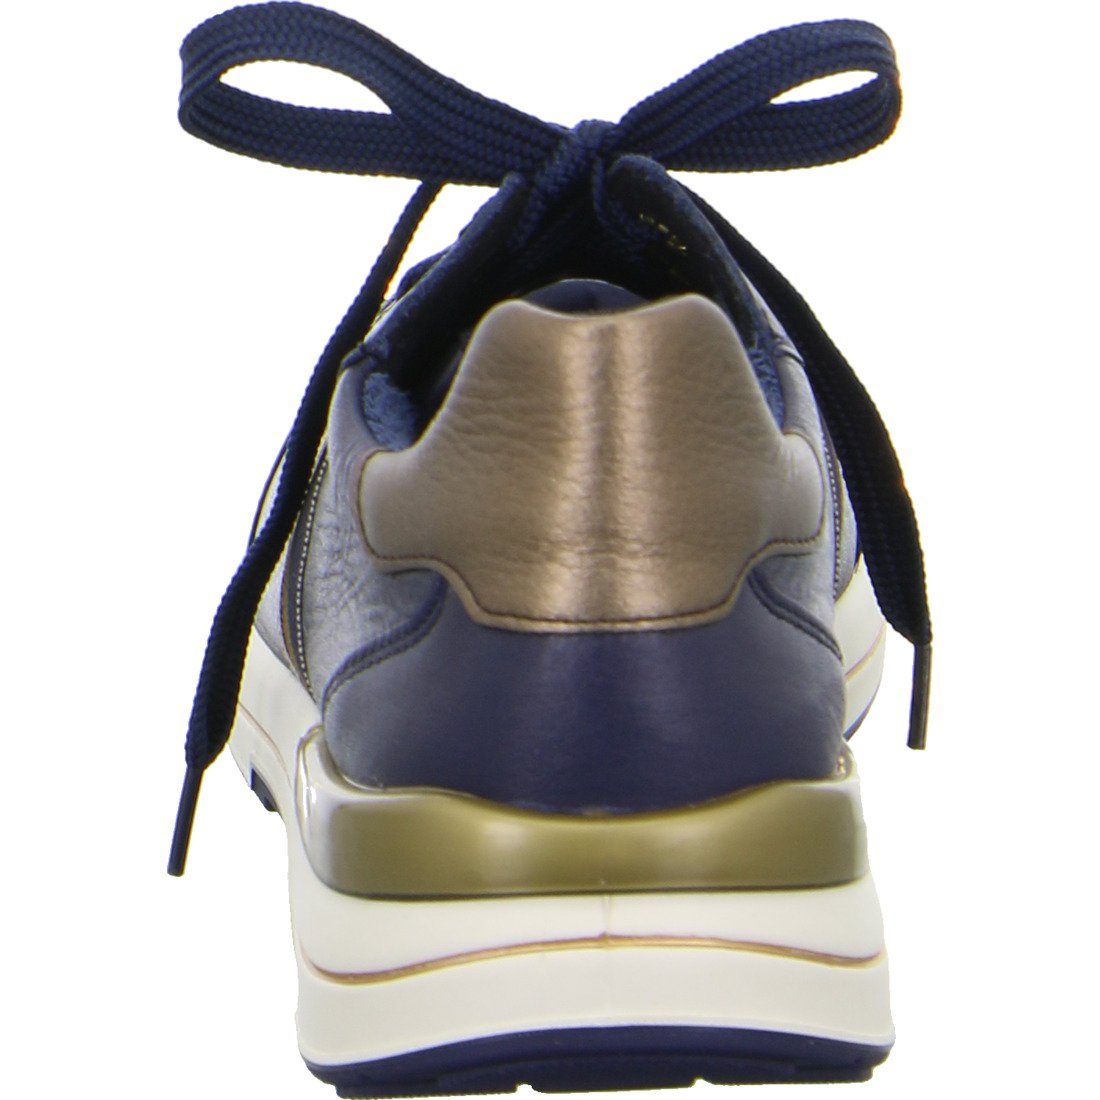 049659 - Ara Ara Glattleder Sneaker blau Nara Schuhe, Sneaker Damen